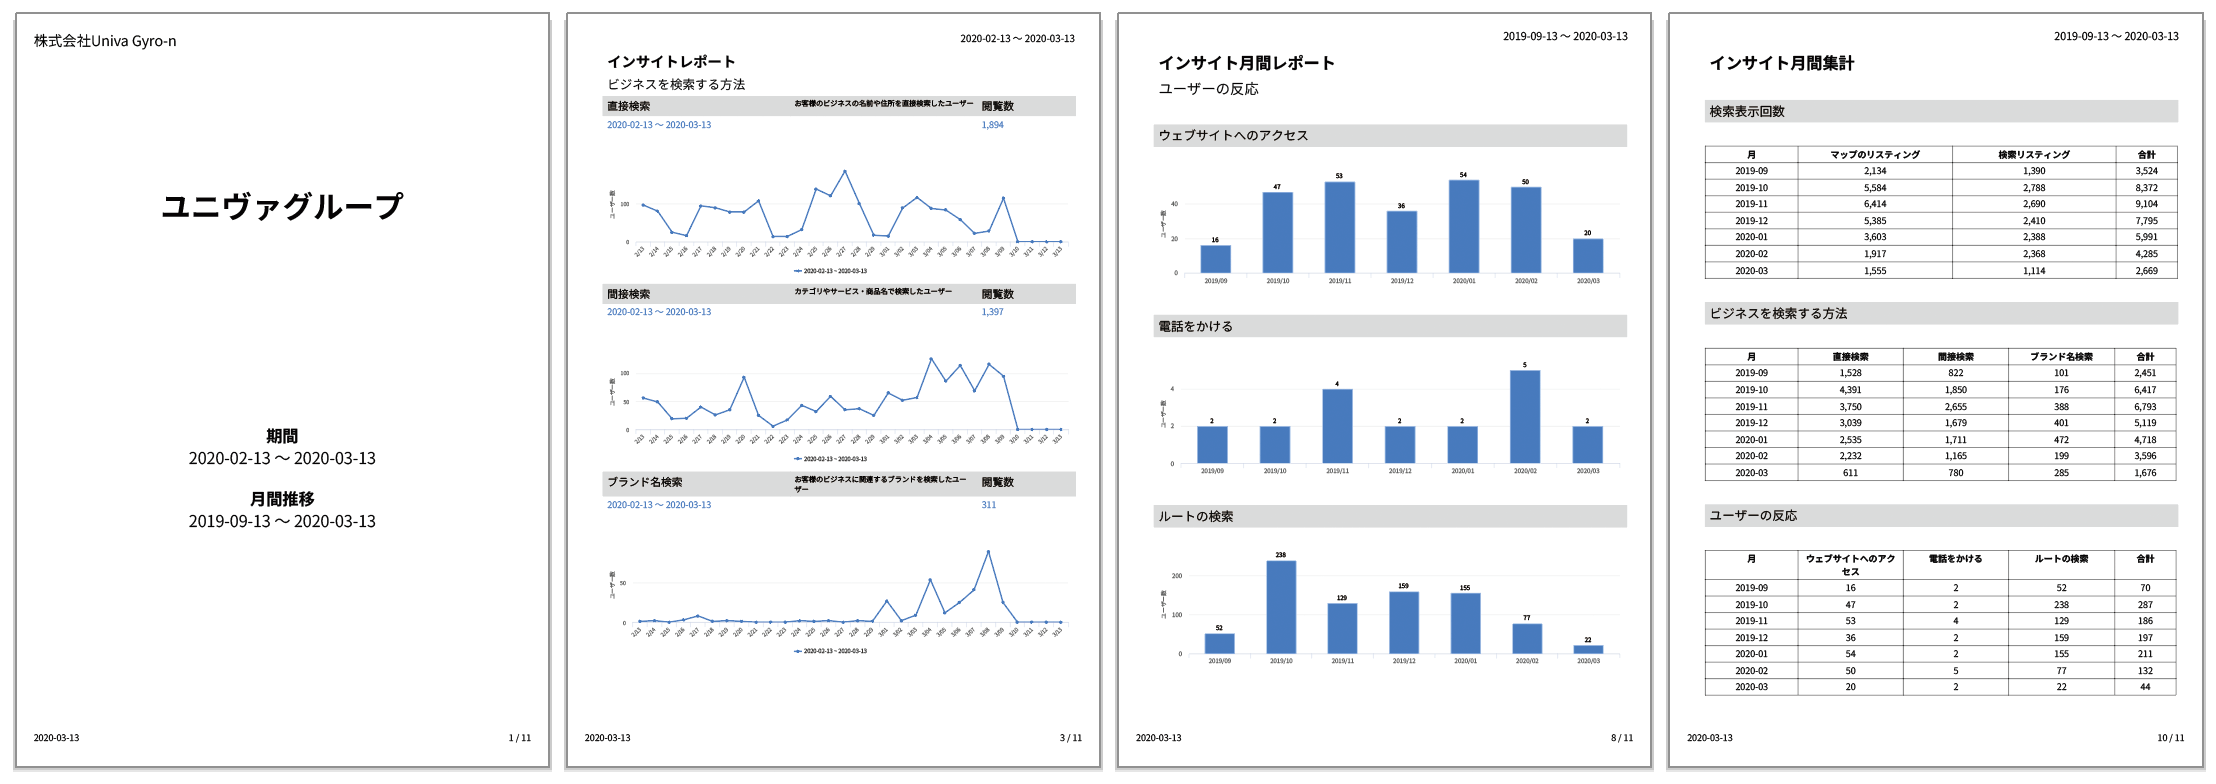 Gyro-n MEOレポート、ビジネスグループのインサイトデータ合算レポート